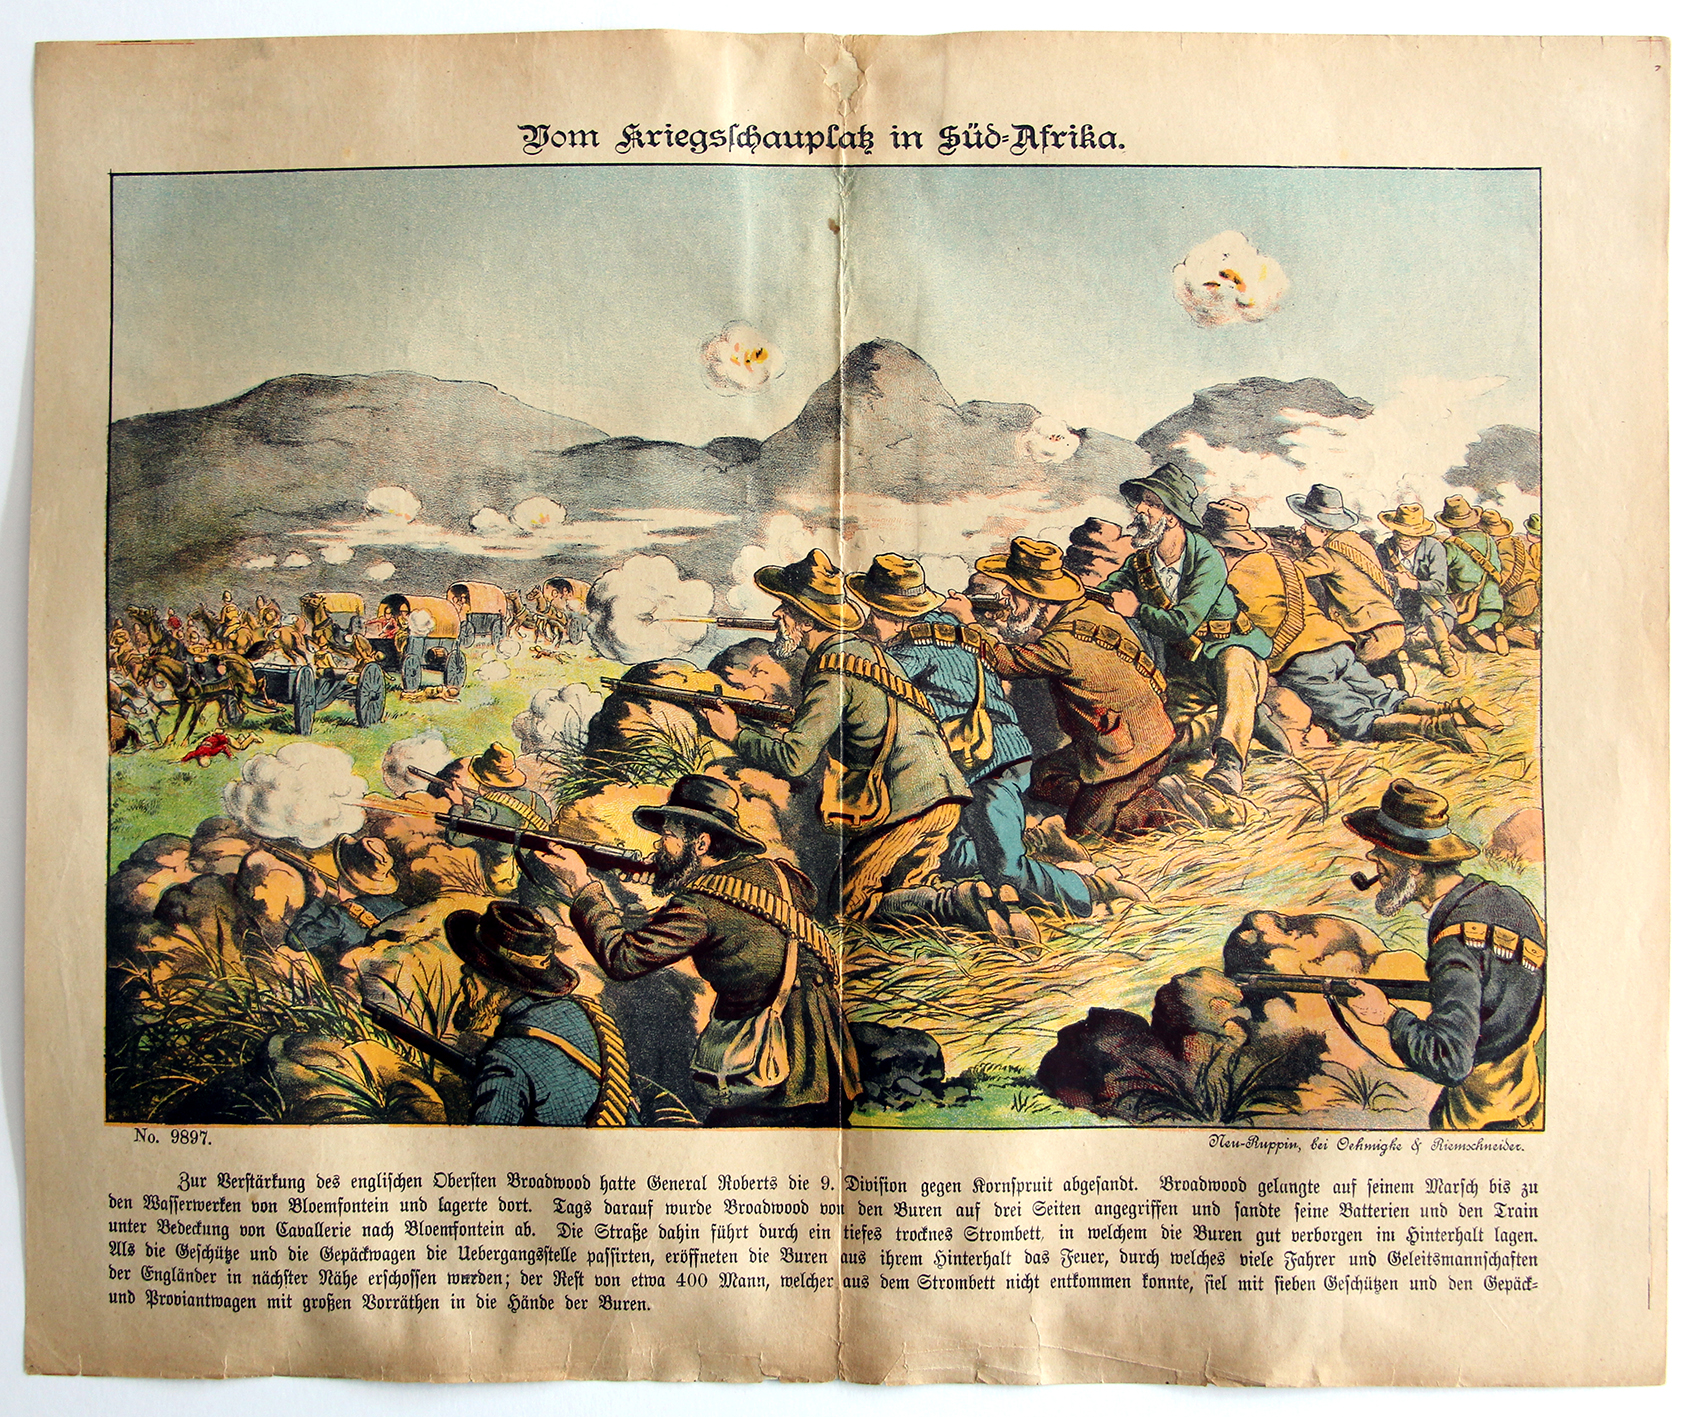 Planche imagerie - Neu-Ruppin, Bei Oehmigke & Riemschneider - Fin XIX - Guerre de Boers - Süd Afrika.